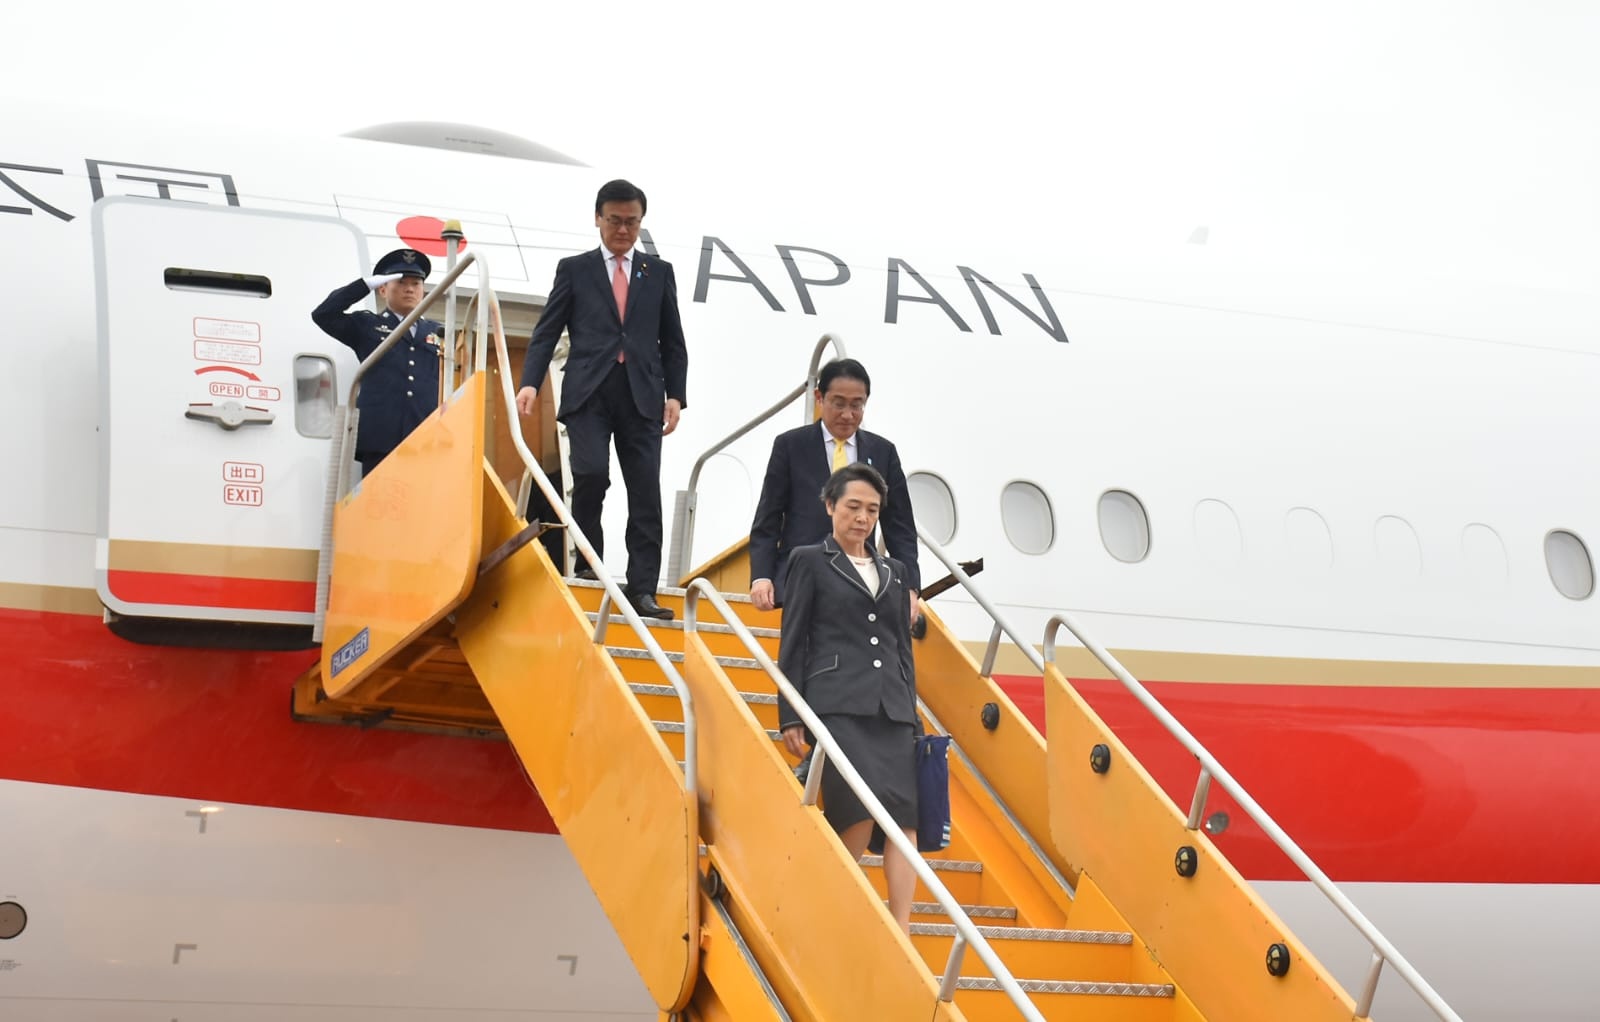 el primer ministro kishida llega a paraguay para reunirse con peña y la comunidad nikkei